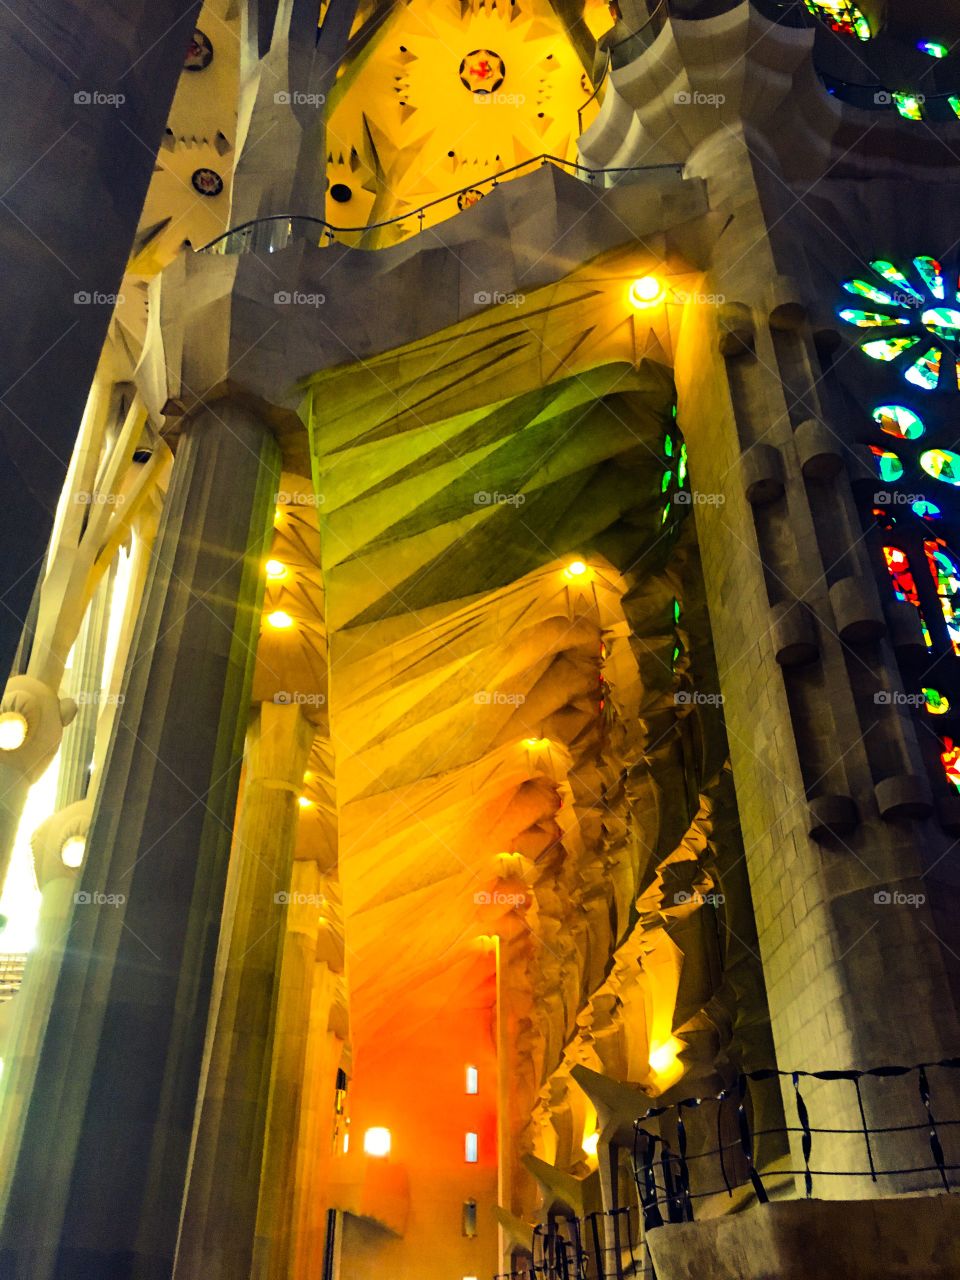 Light show in Sagrada Familia